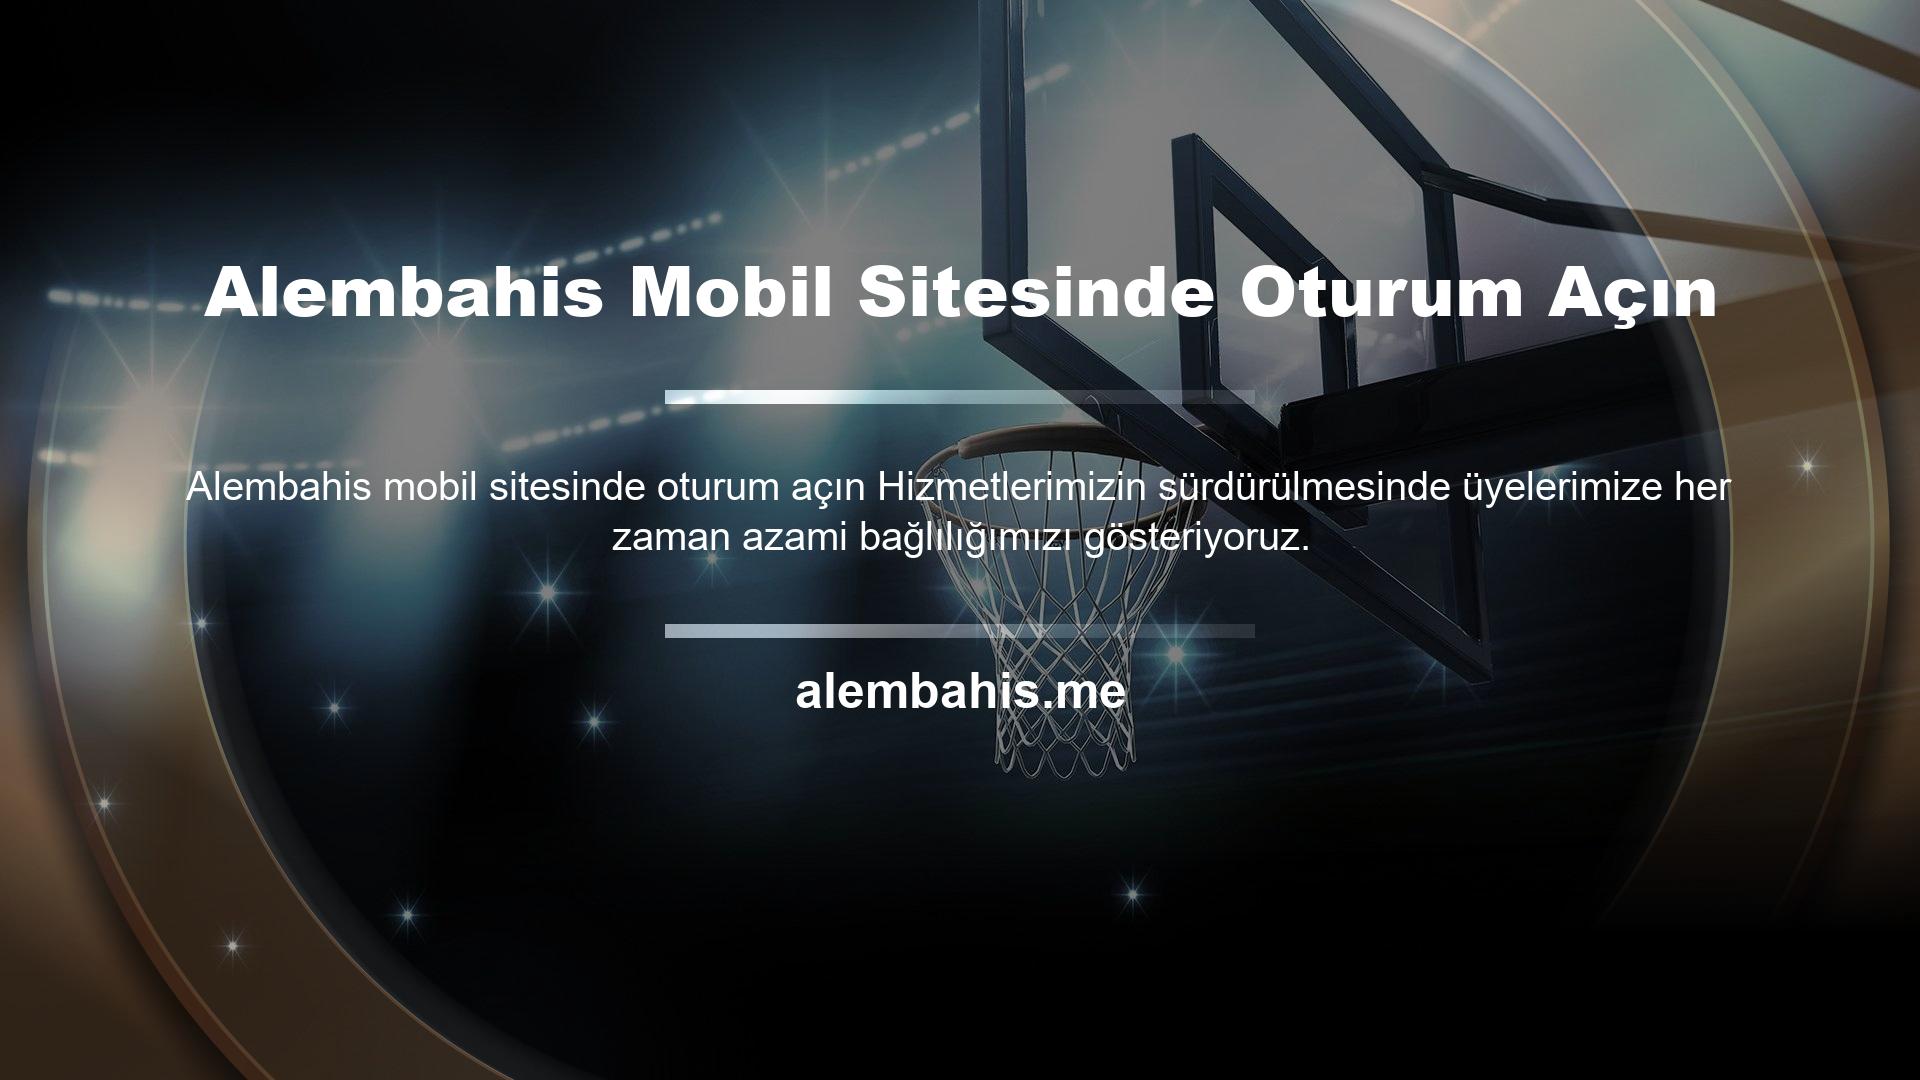 Mobil sistem, Alembahis mobil sitesine erişim için sorunsuz ve kesintisiz iletişim sağlar